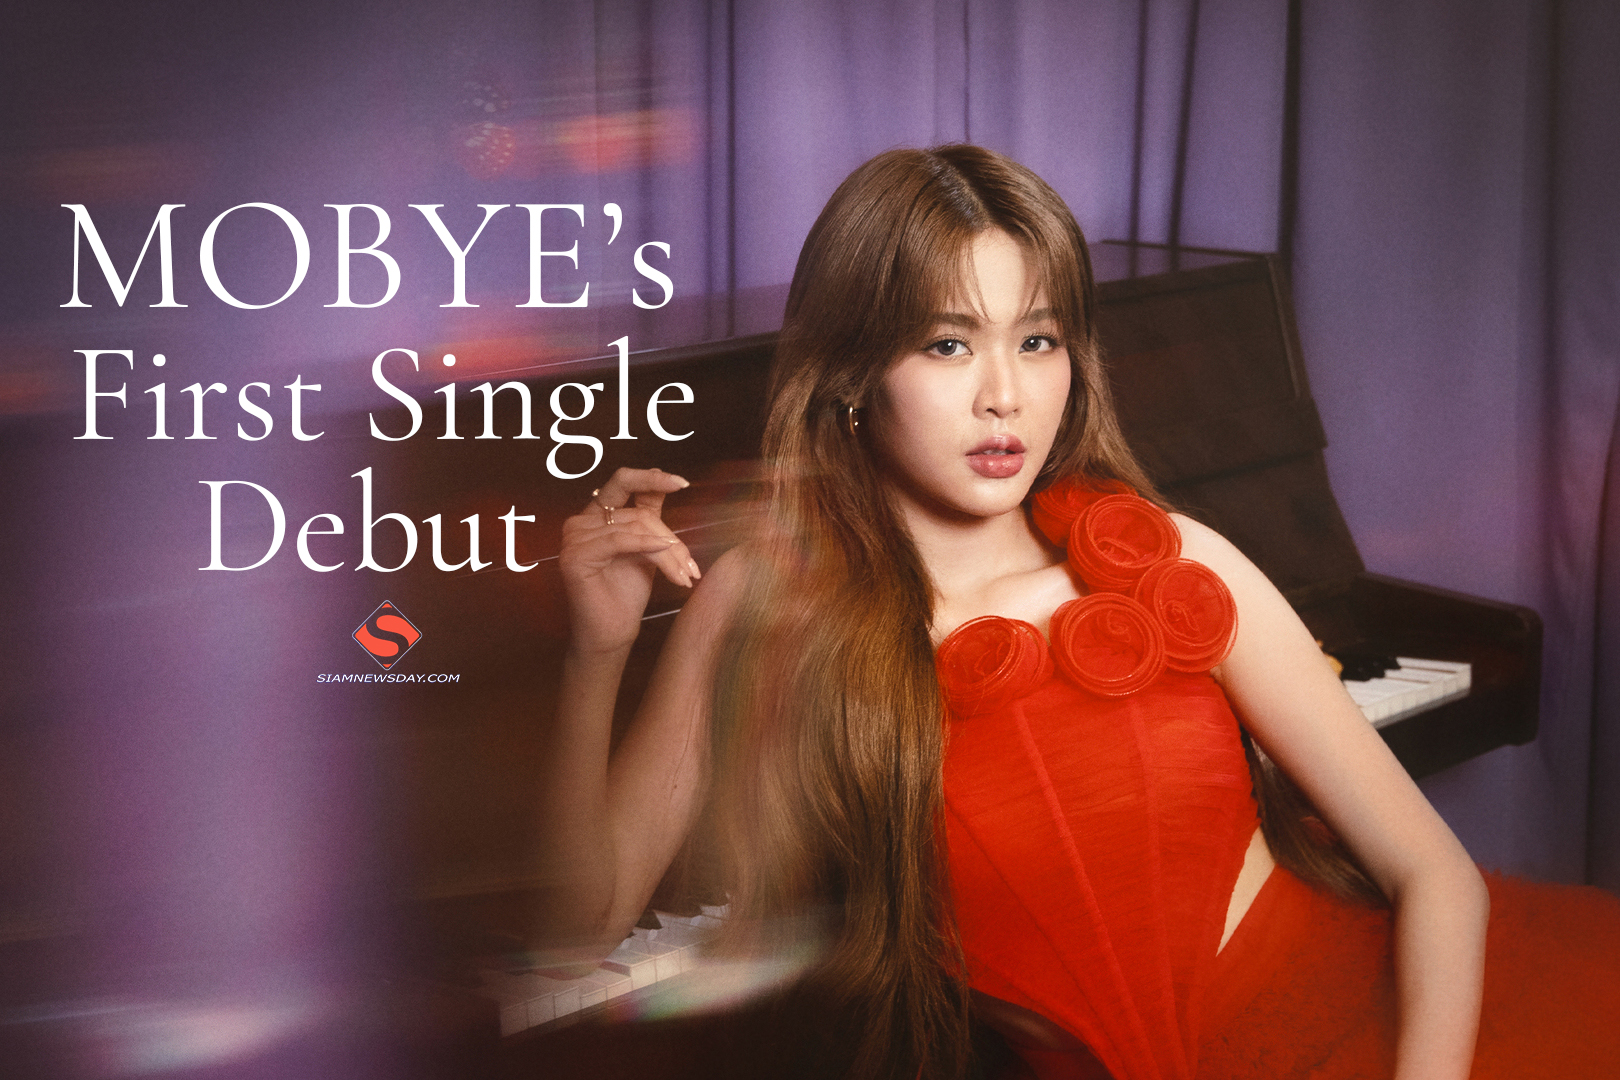  MOBYE’s First Single Debut  ส่งเพลง “มีใจทำไมไม่จีบ” ในฐานะศิลปินเดี่ยวอย่างเต็มตัว